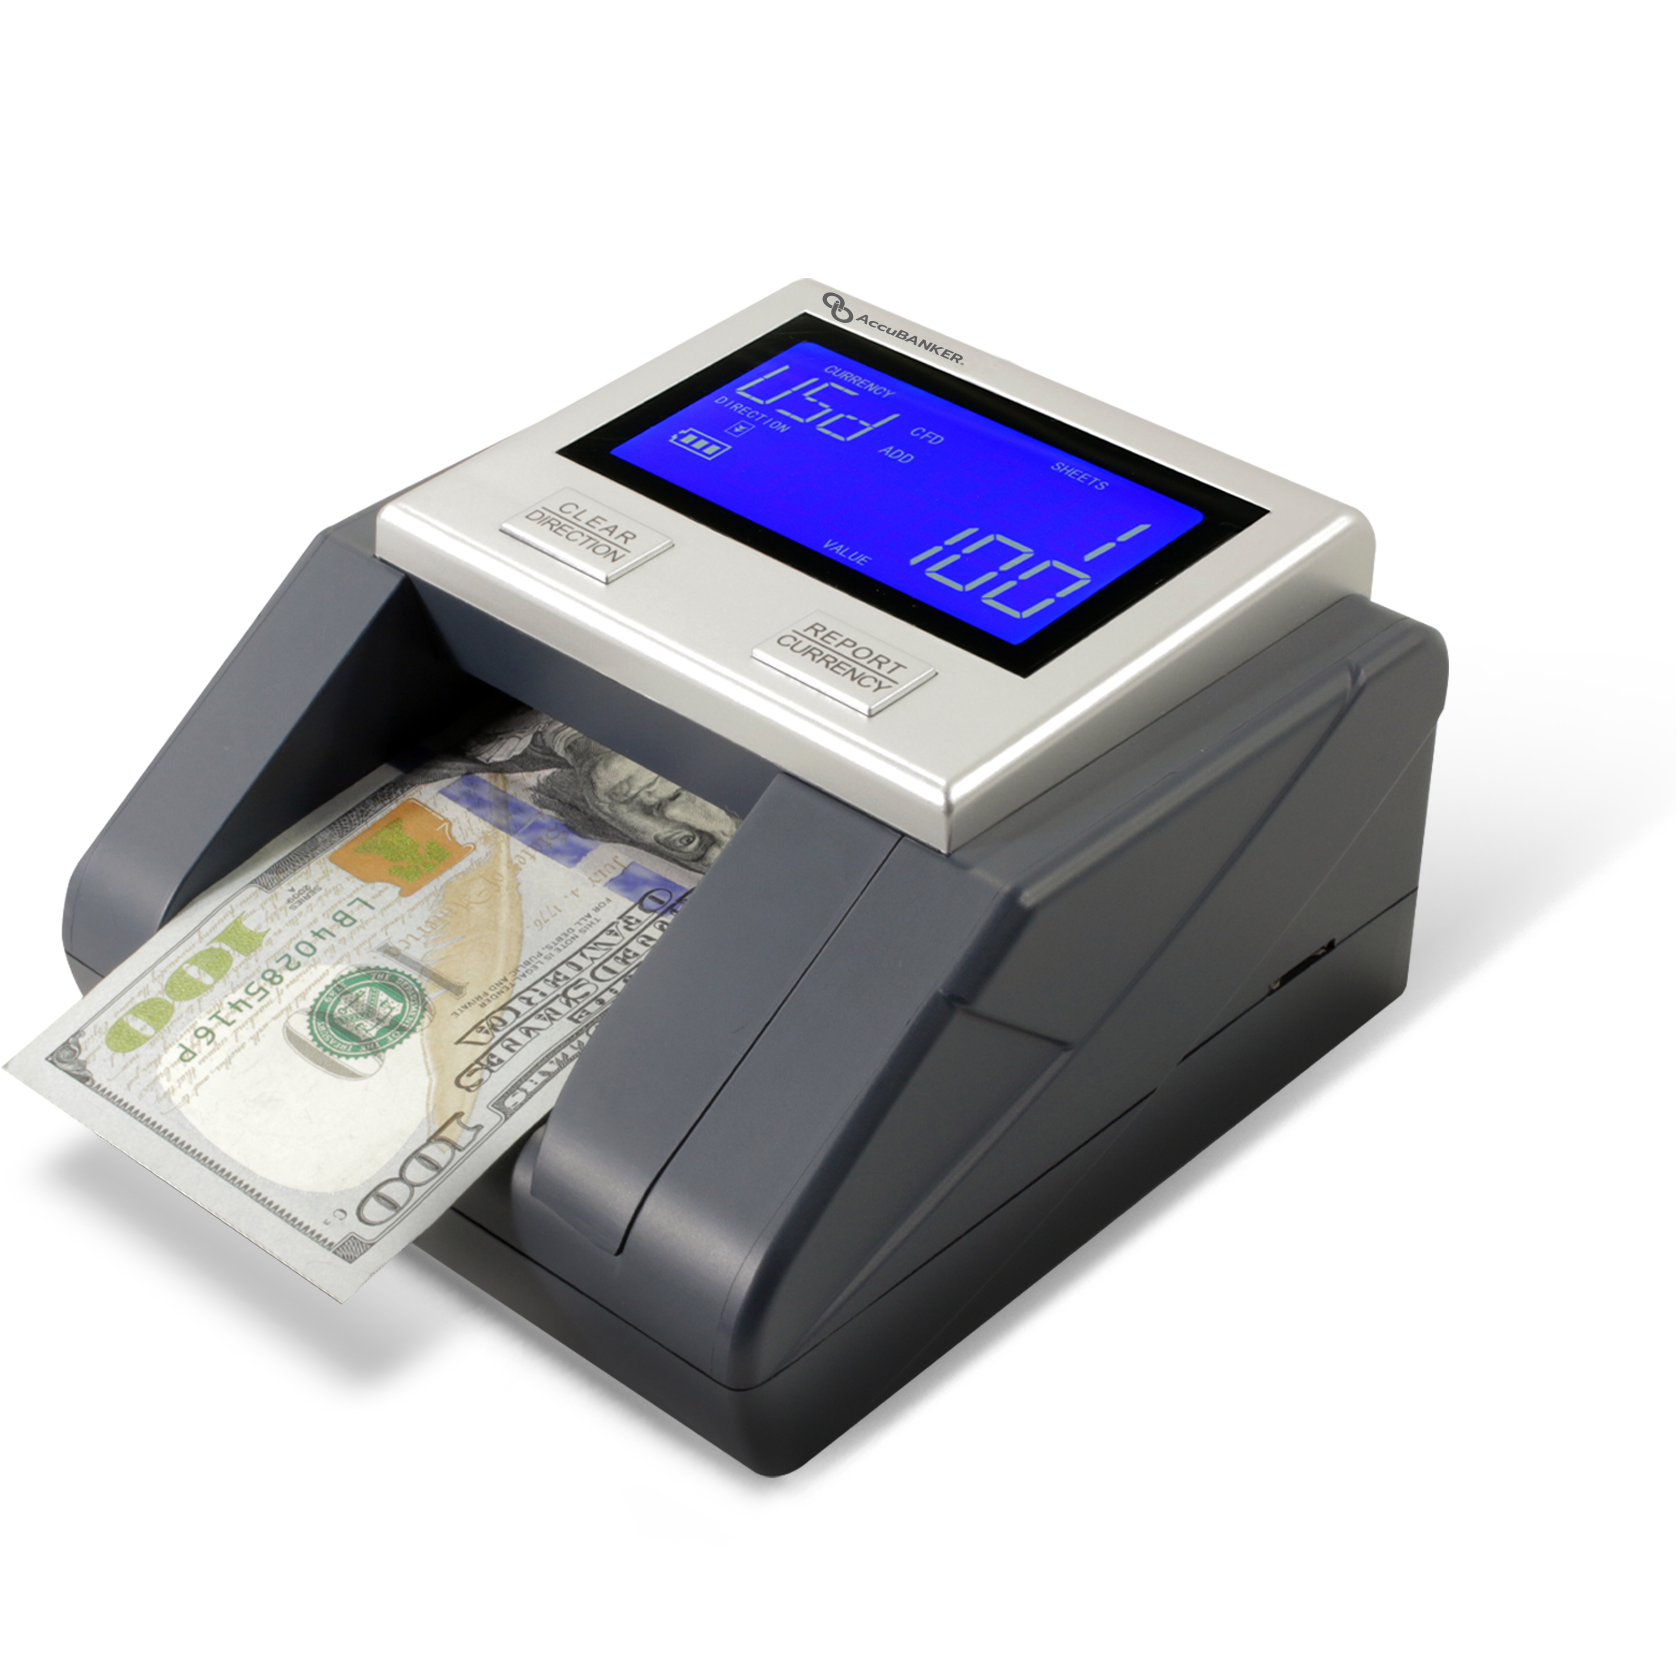 Detector de billetes falsos multi-Scanix D585-AccuBANKER